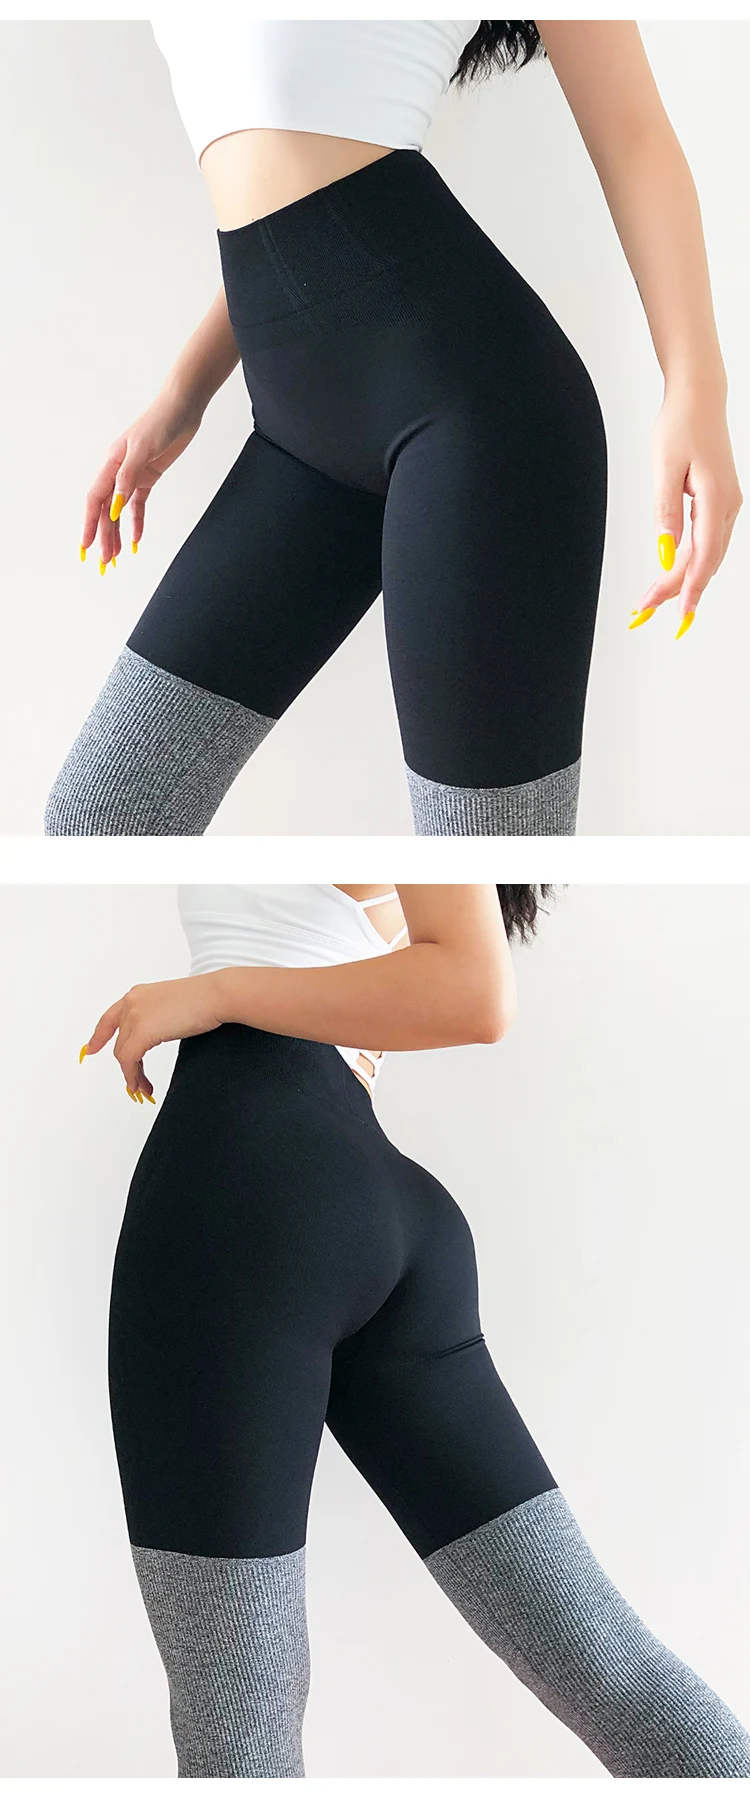 X-HERR, женские спортивные Леггинсы контрастного цвета для спортзала, для йоги, плотные, с высокой талией, бесшовные, для тренировок, спортивные колготки, штаны для йоги